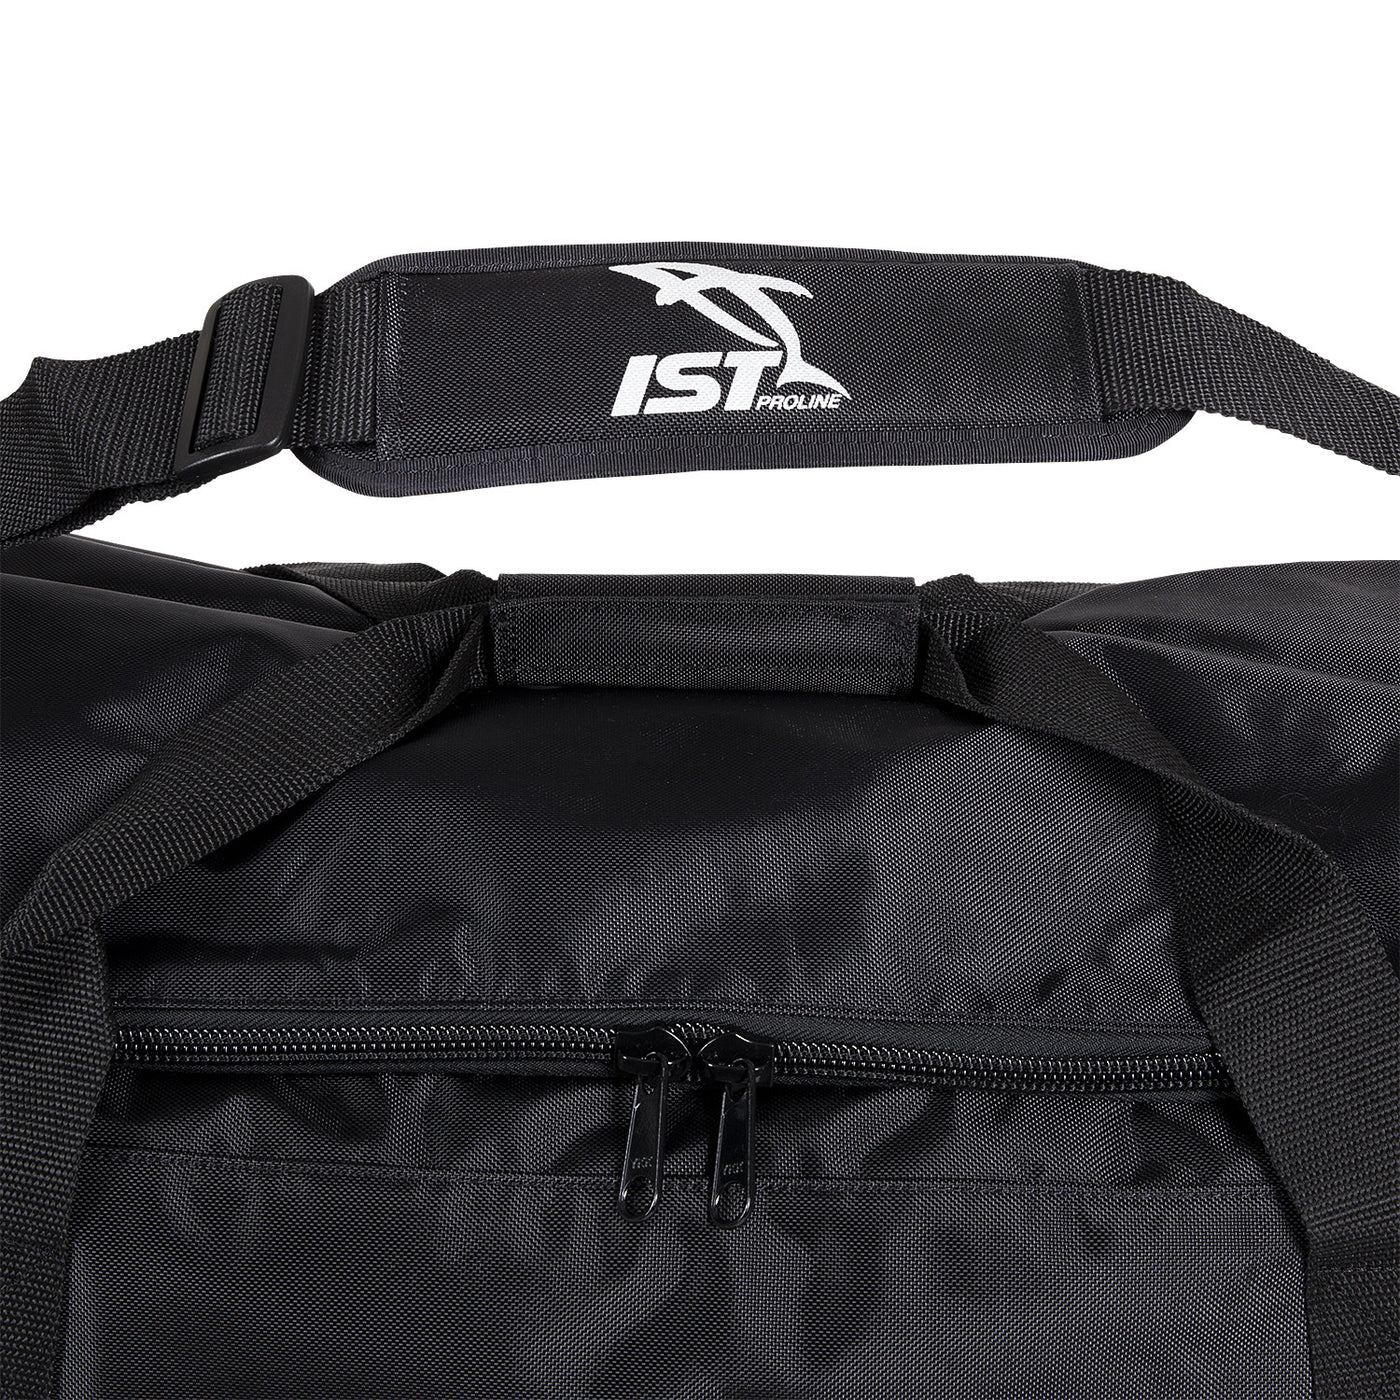 840D Nylon Free Diving Gear Bag – Shop709.com